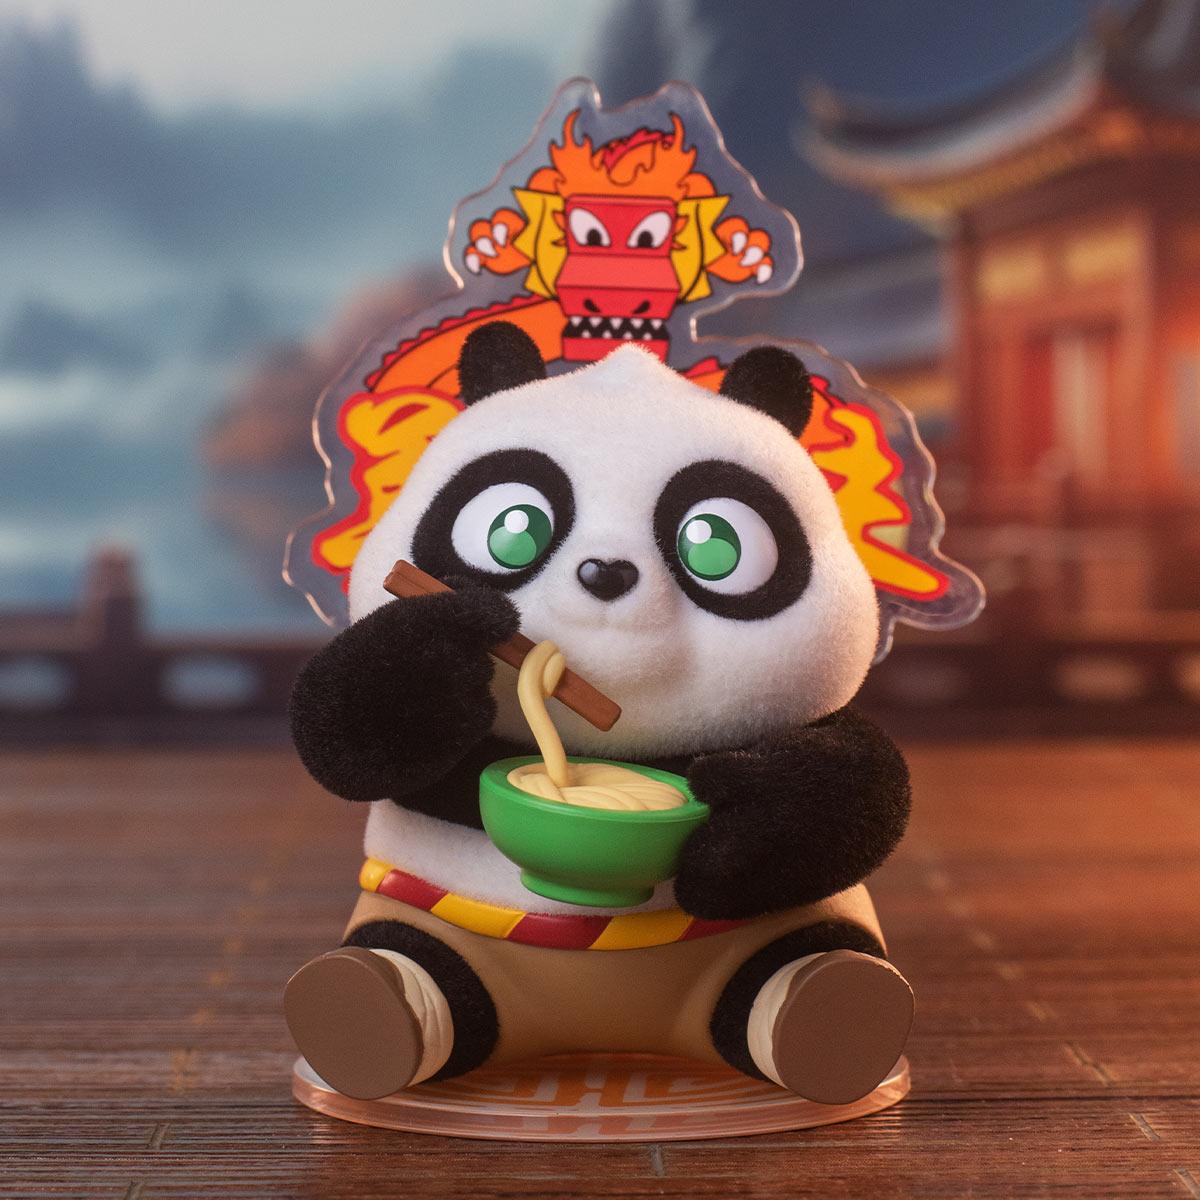 Đồ Chơi Mô Hình Pop Mart Universal Kung Fu Panda (Mẫu Bên Trong Là Ngẫu Nhiên)